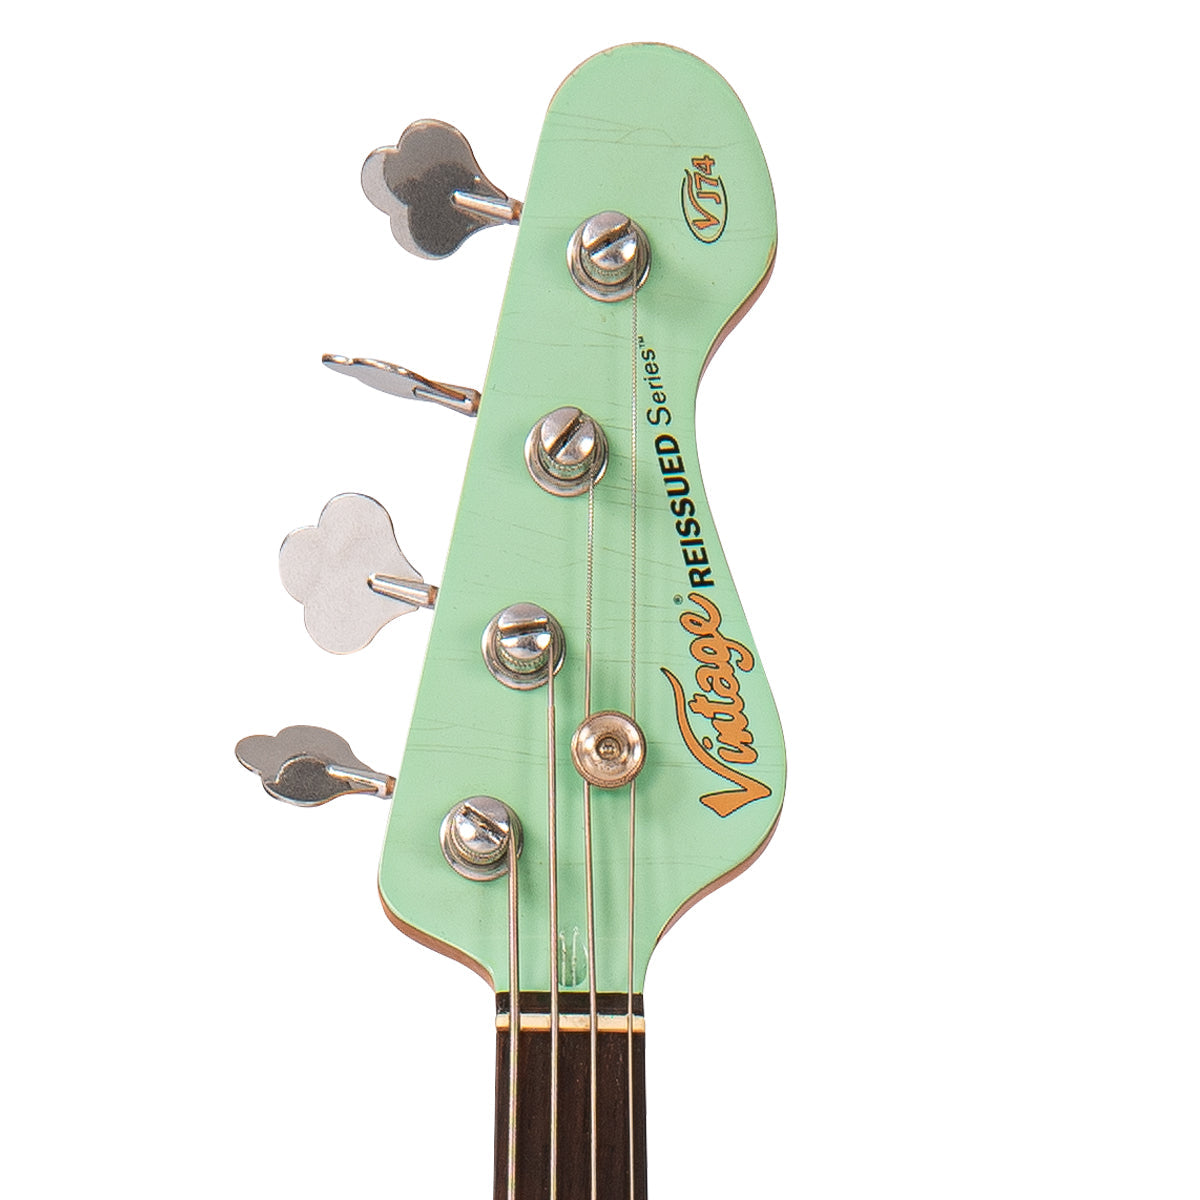 SOLD - Vintage VJ74 ProShop Unique ~ Aged Ventura Green, Electrics for sale at Richards Guitars.